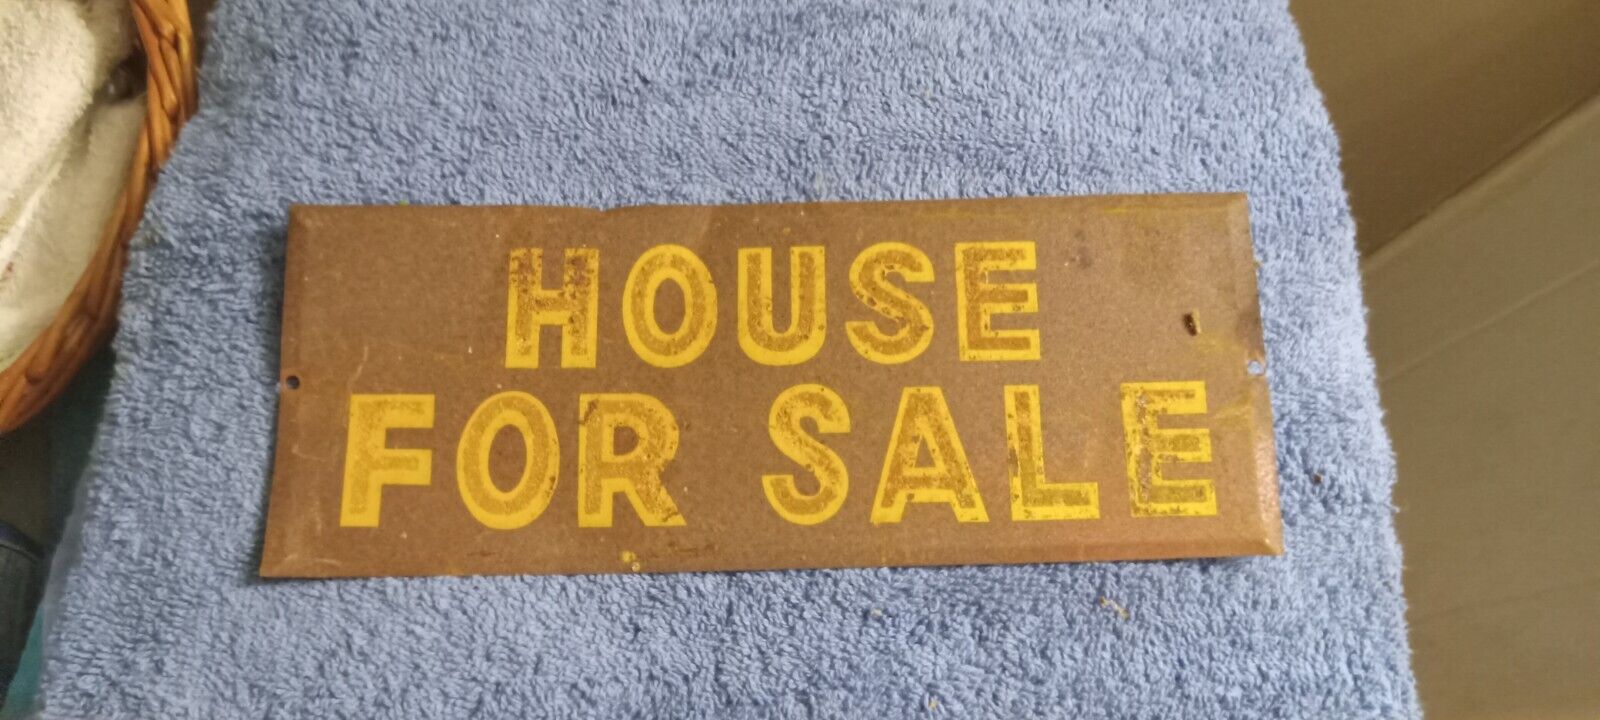 vintage metal house for sale sign